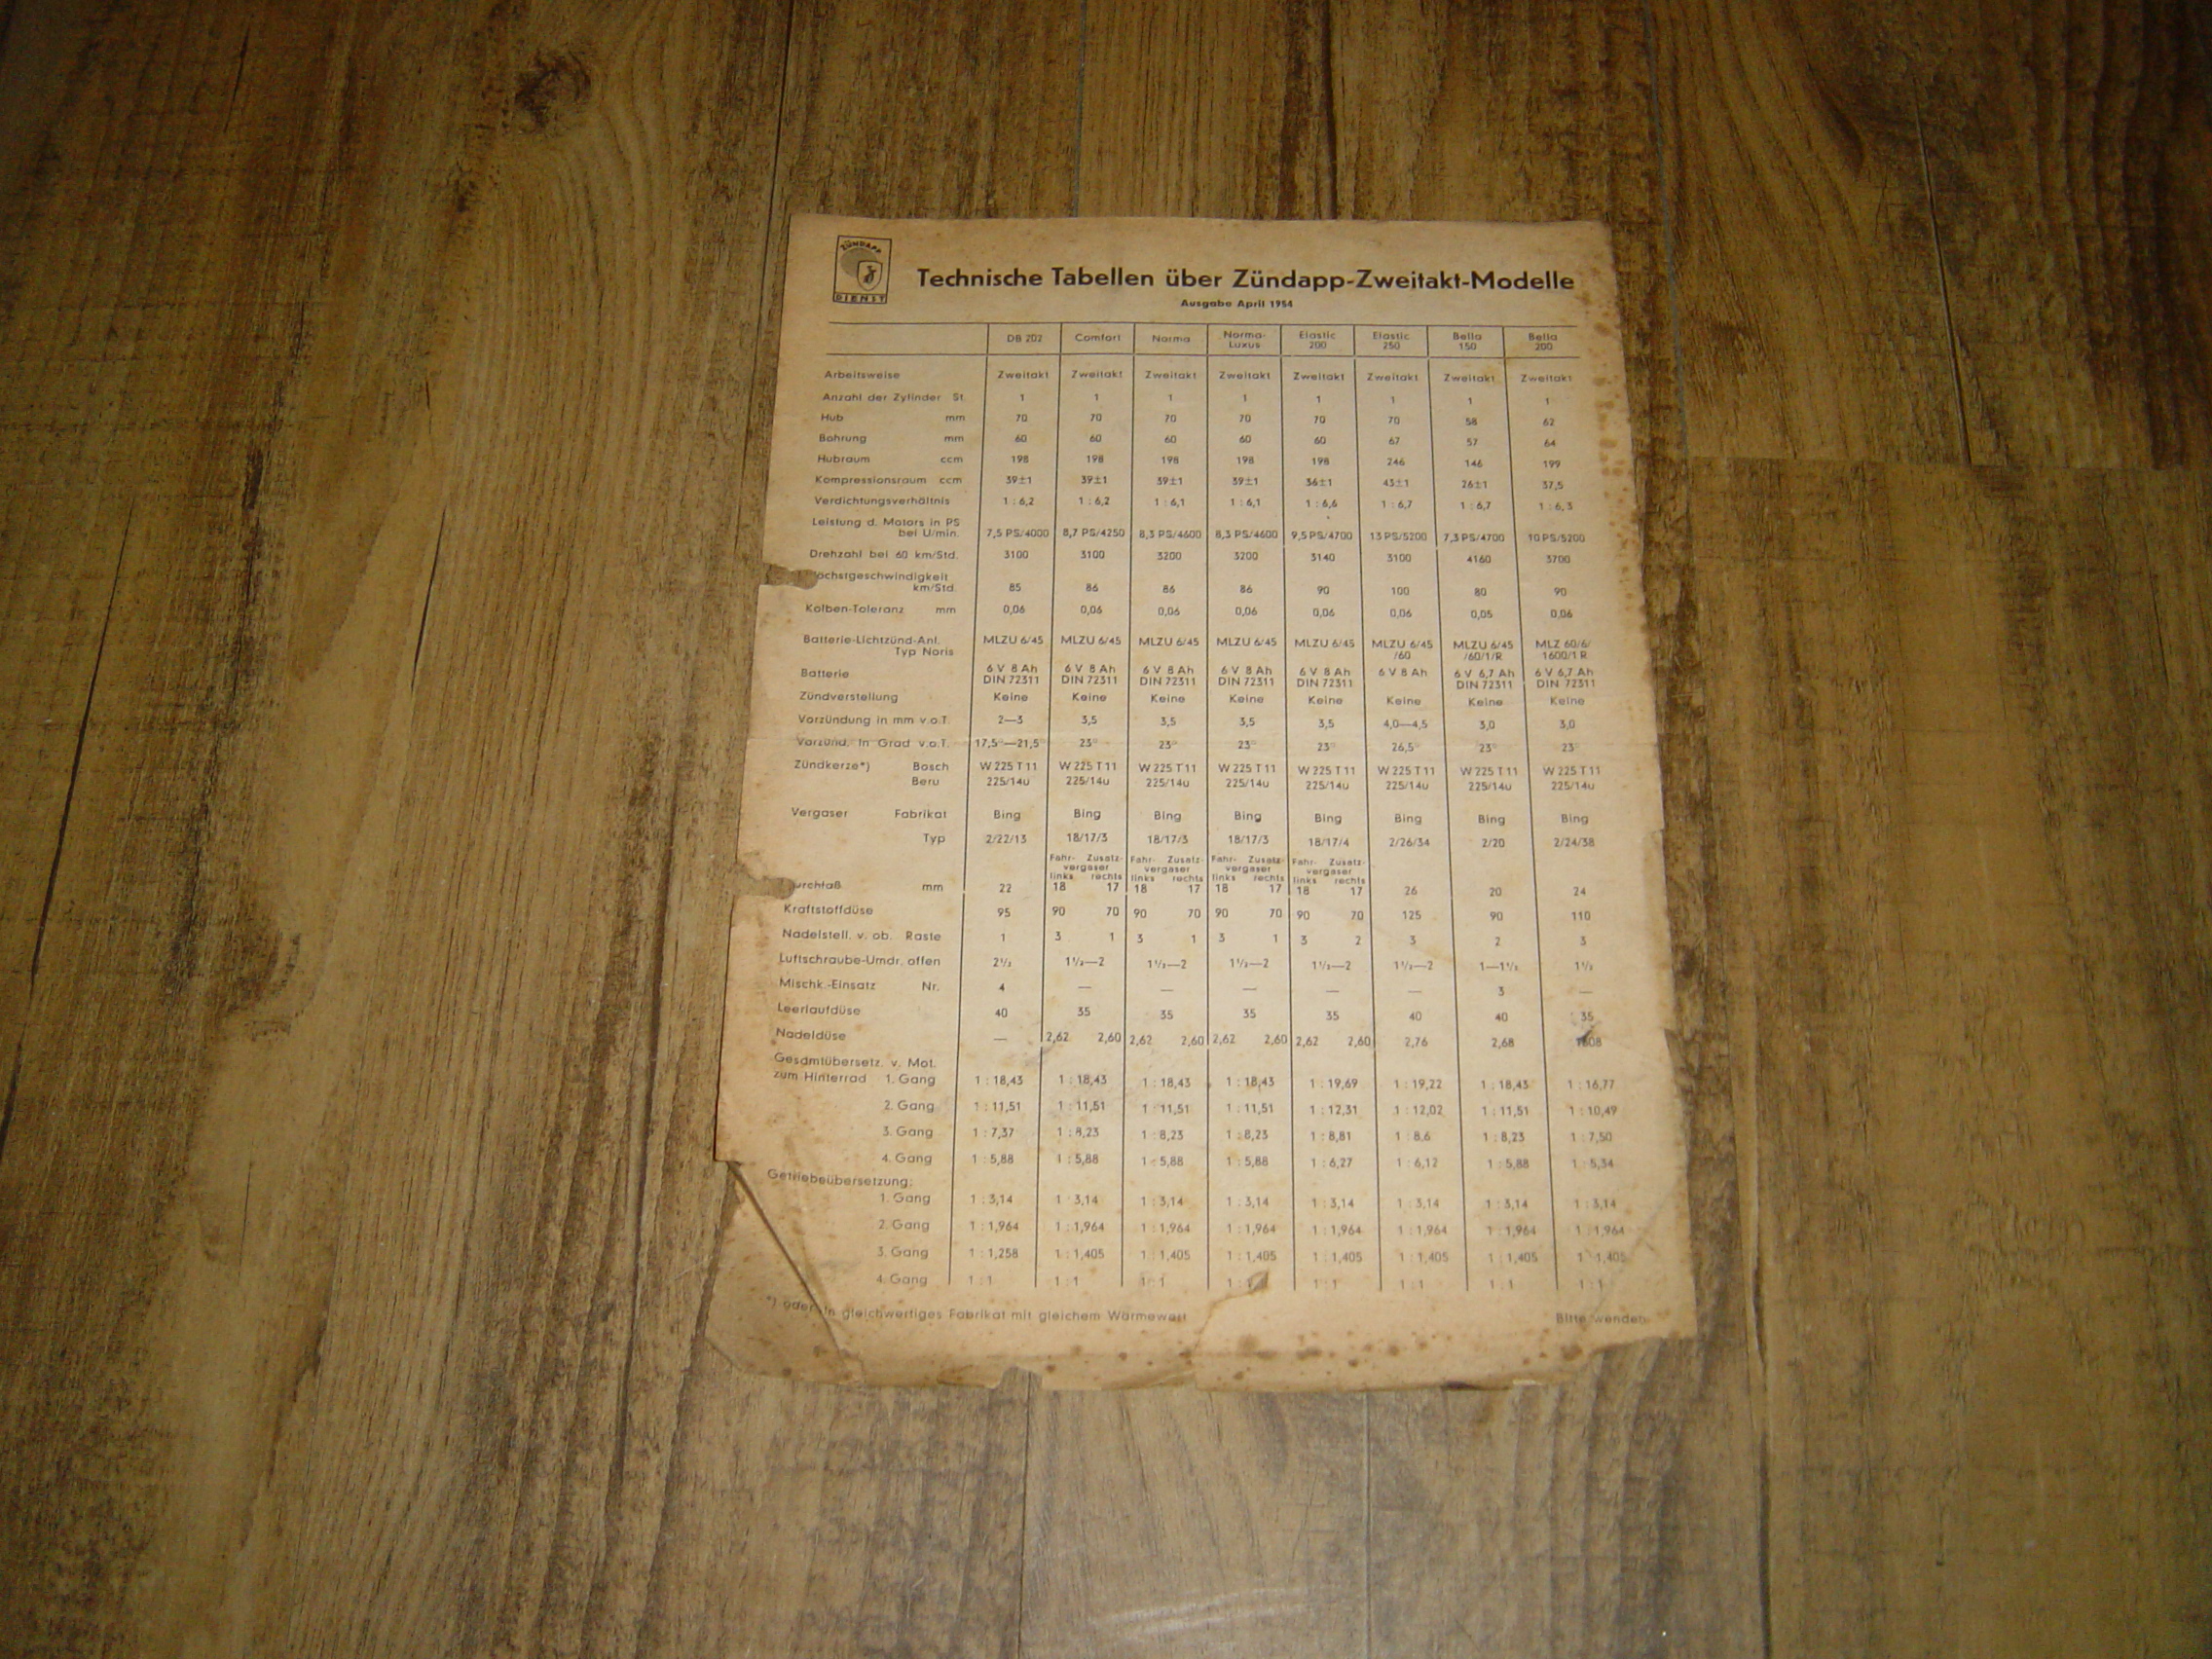 Technische Tabellen über Zündapp-Zweitaktmodelle April 1954